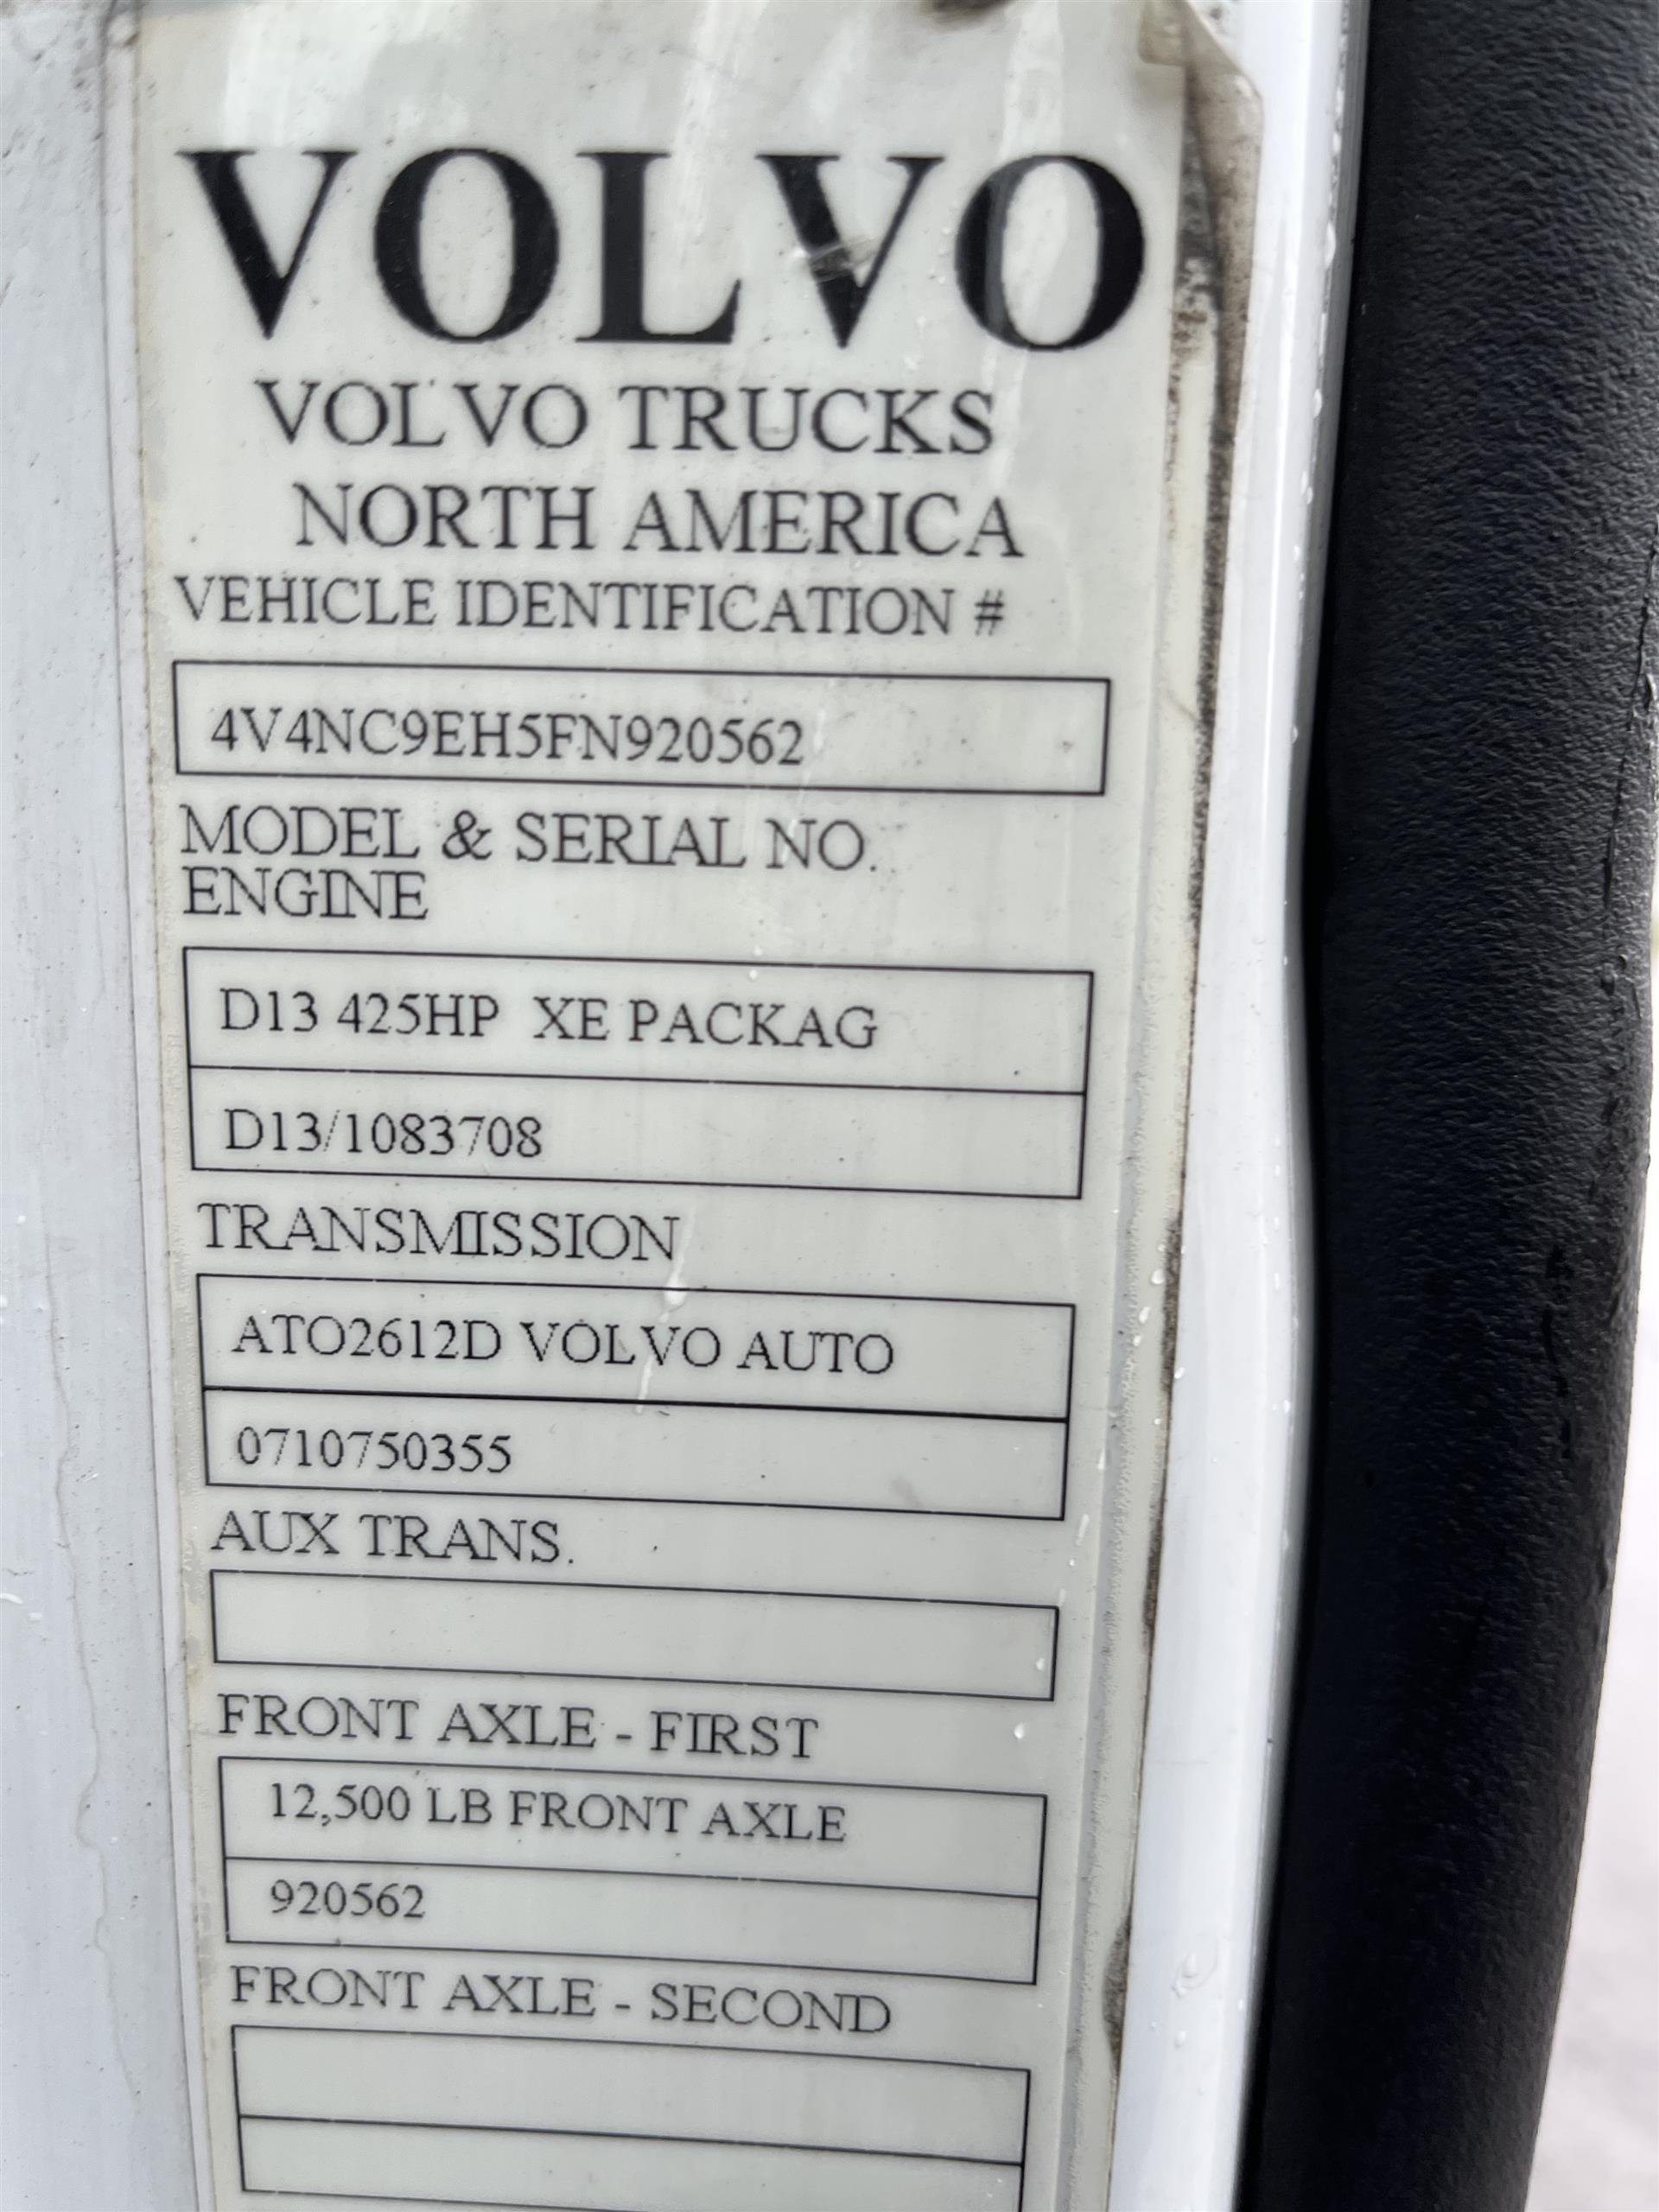 2015 Volvo VNL630 – 920562